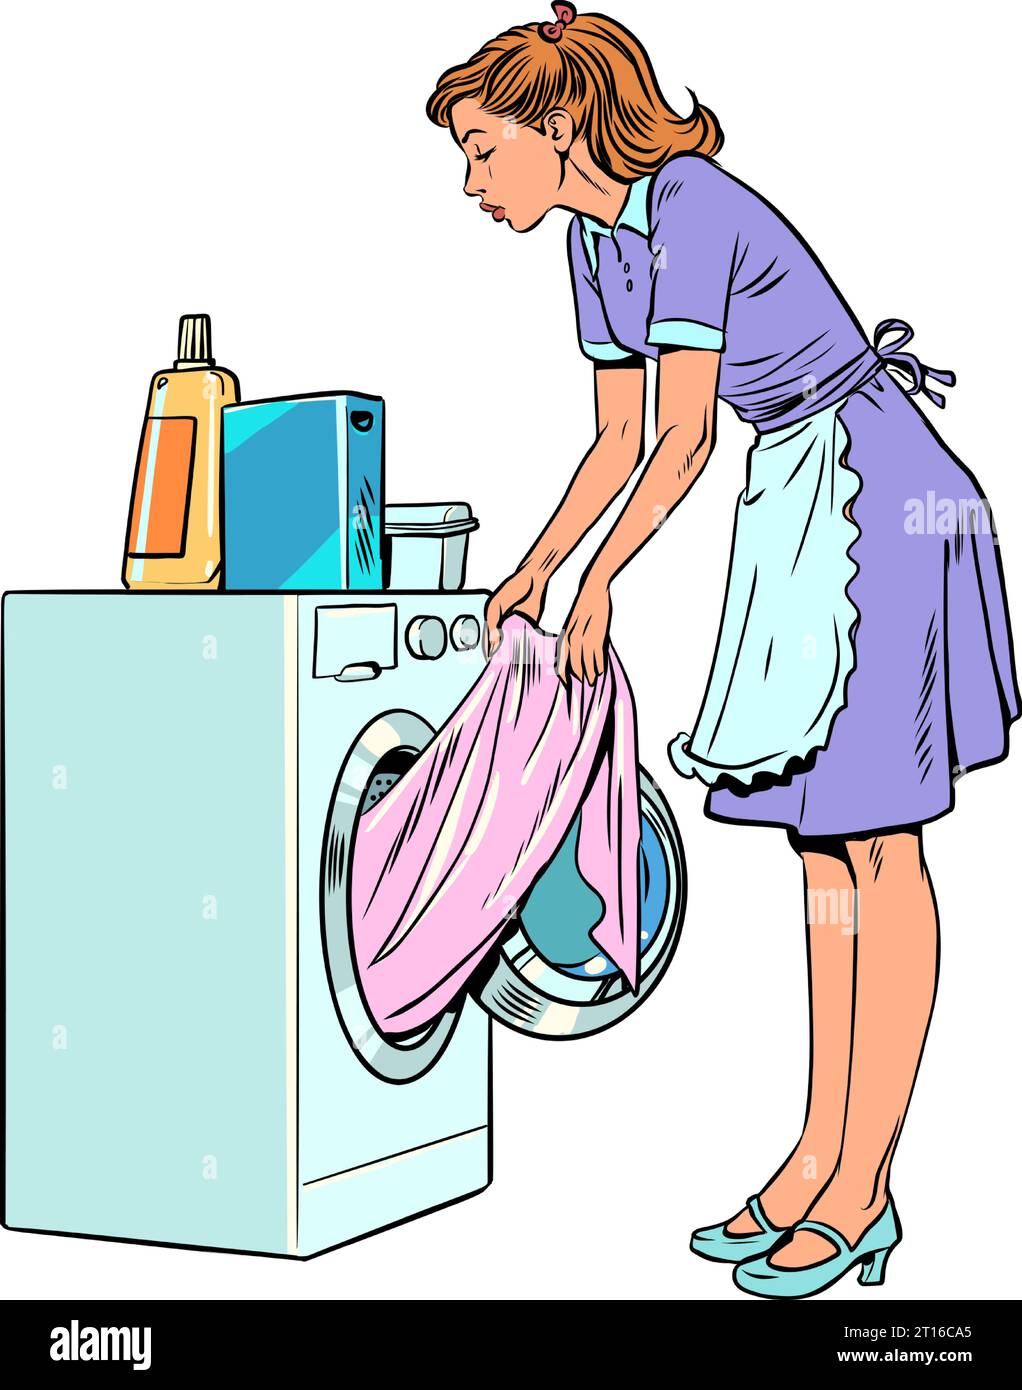 Les serviteurs aident les propriétaires avec la lessive. Femme au foyer responsable s'occupe des tâches ménagères. Une fille en uniforme sort des vêtements de la Illustration de Vecteur